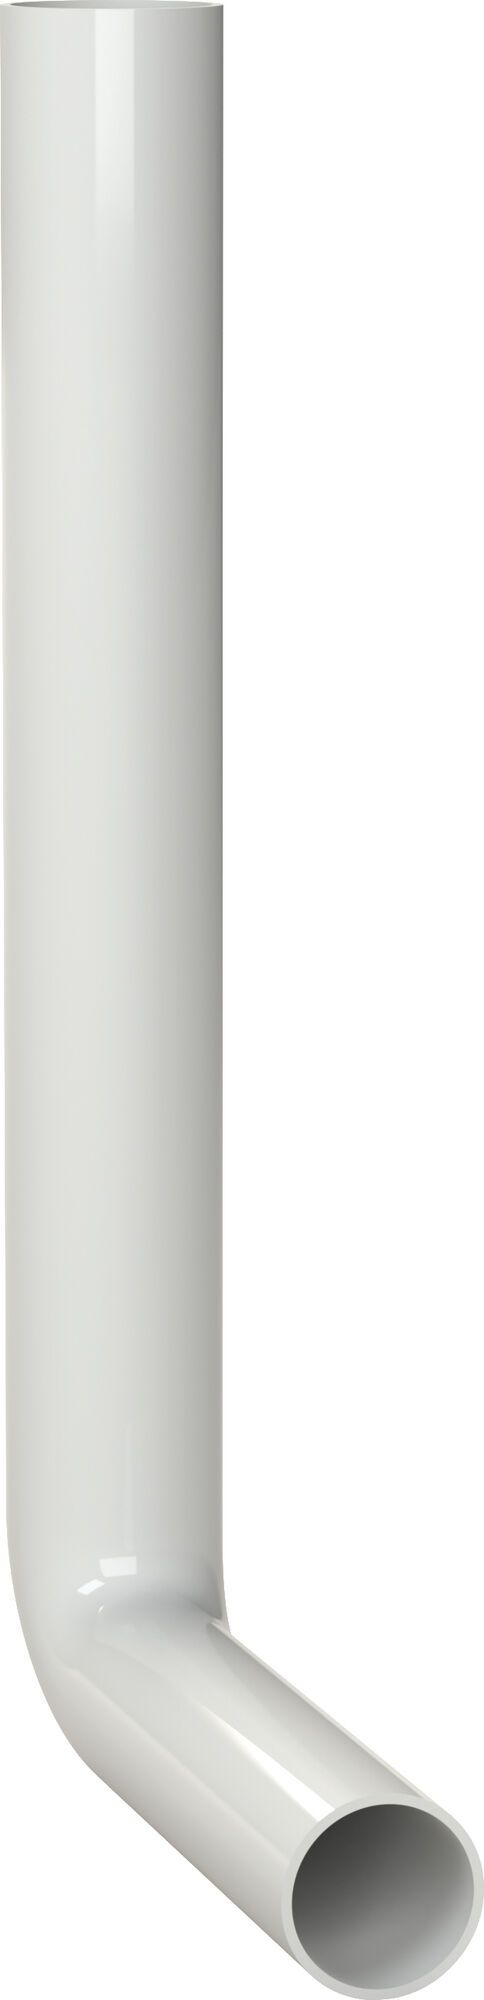 Flush pipe elbow 380 x 210 mm, white